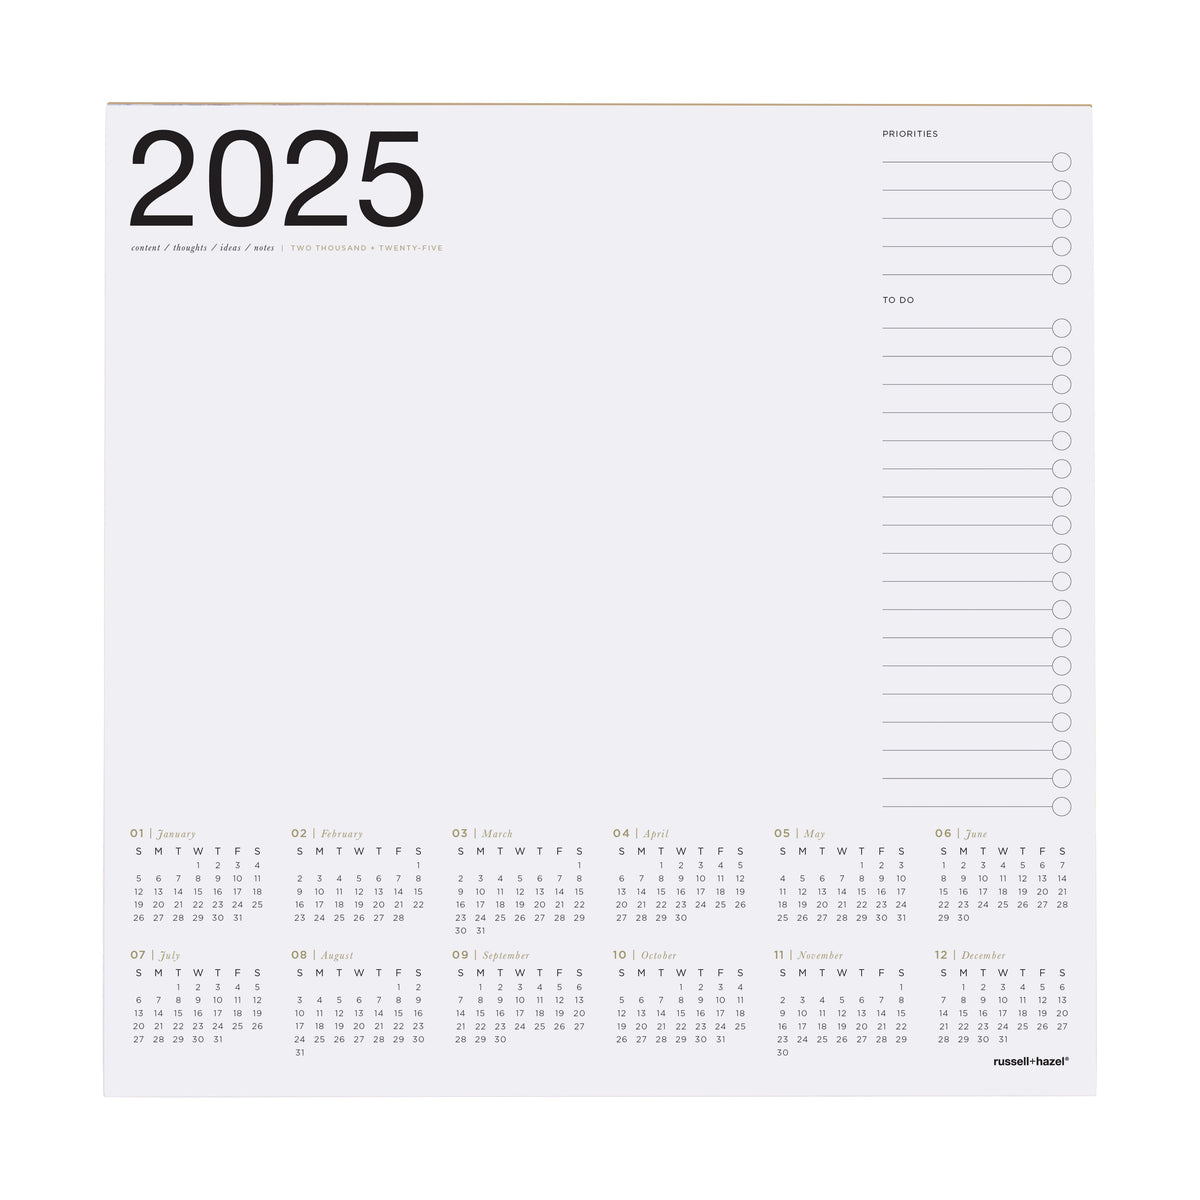 2024 Smart Deck Desktop Calendar 2025 102356 russell+hazel Calendar